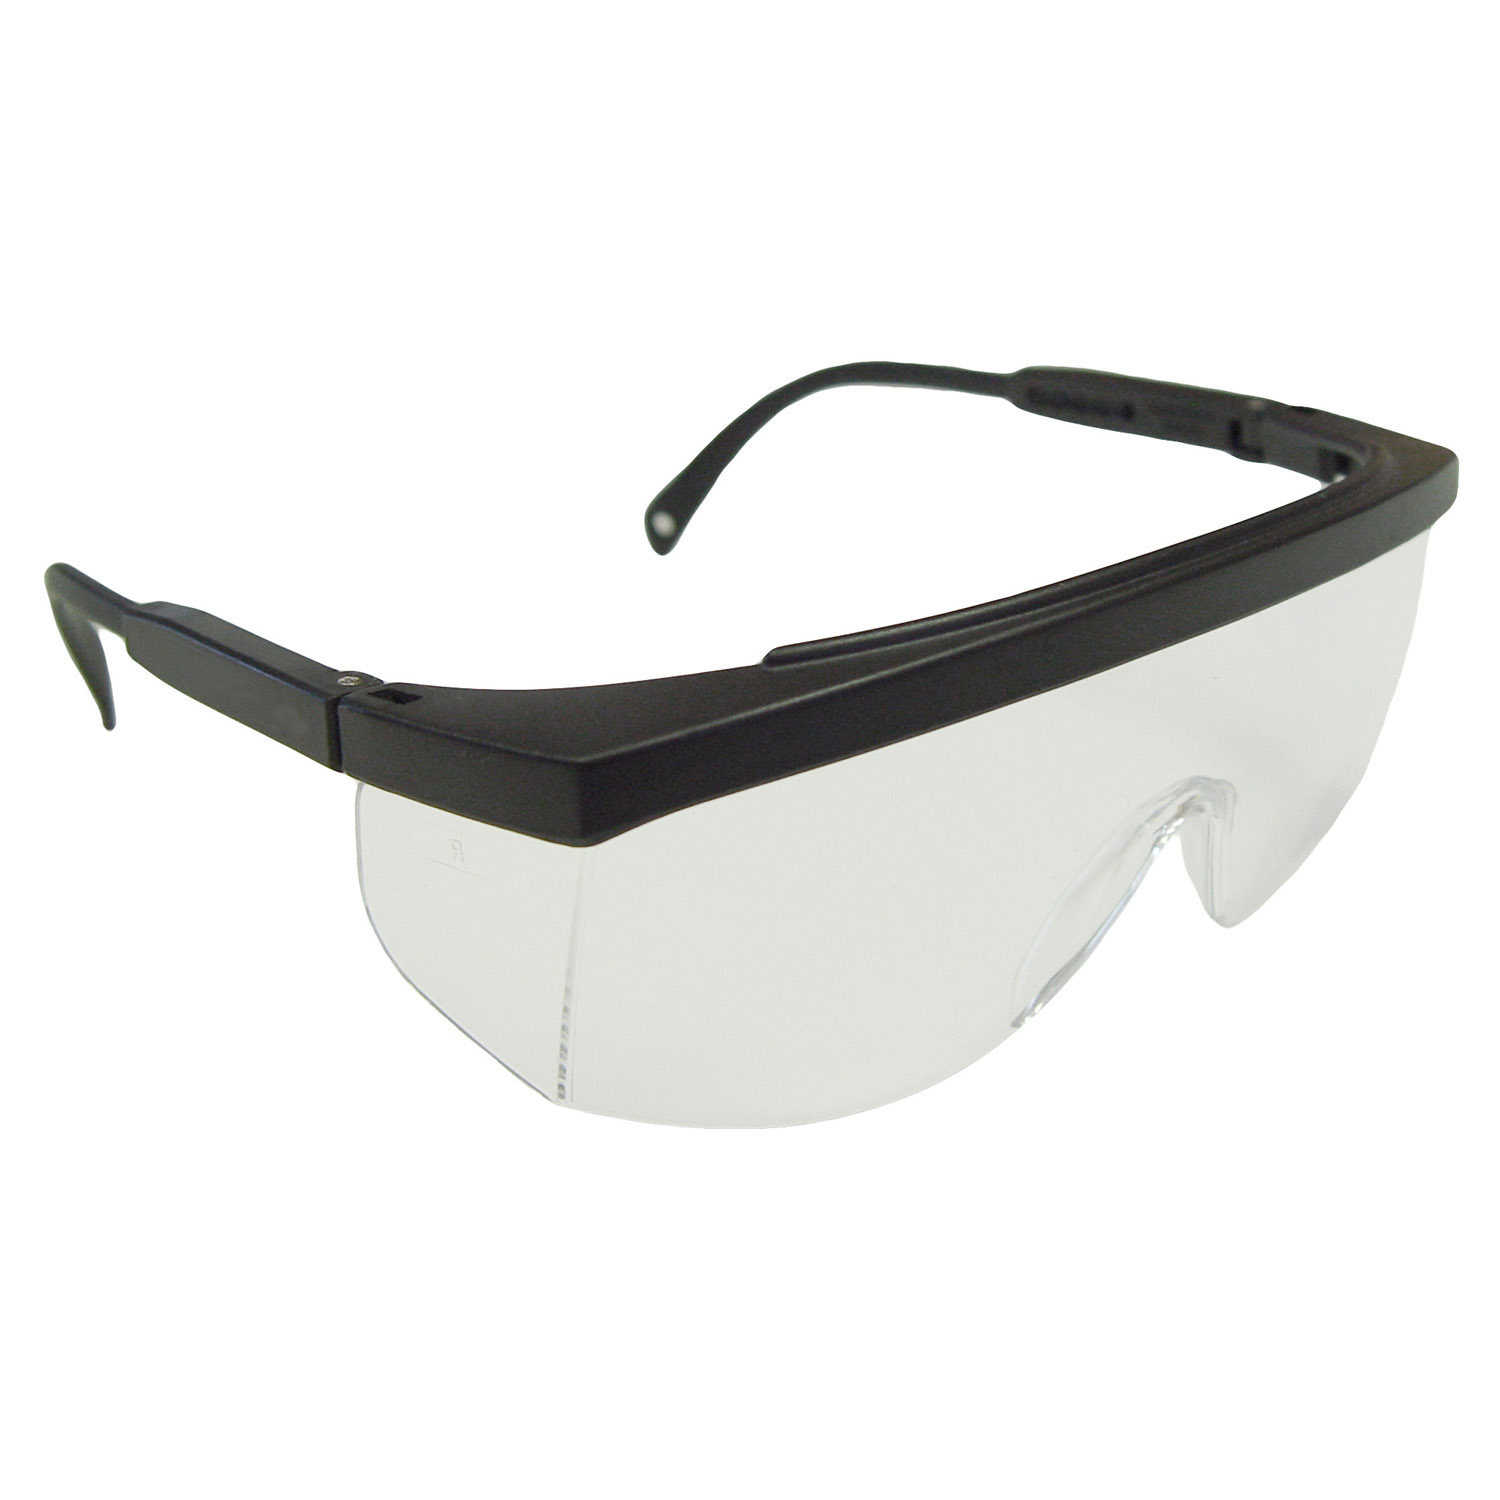 Galaxy™ Safety Eyewear - Black Frame - Clear Anti-Fog Lens - Anti-Fog Lens